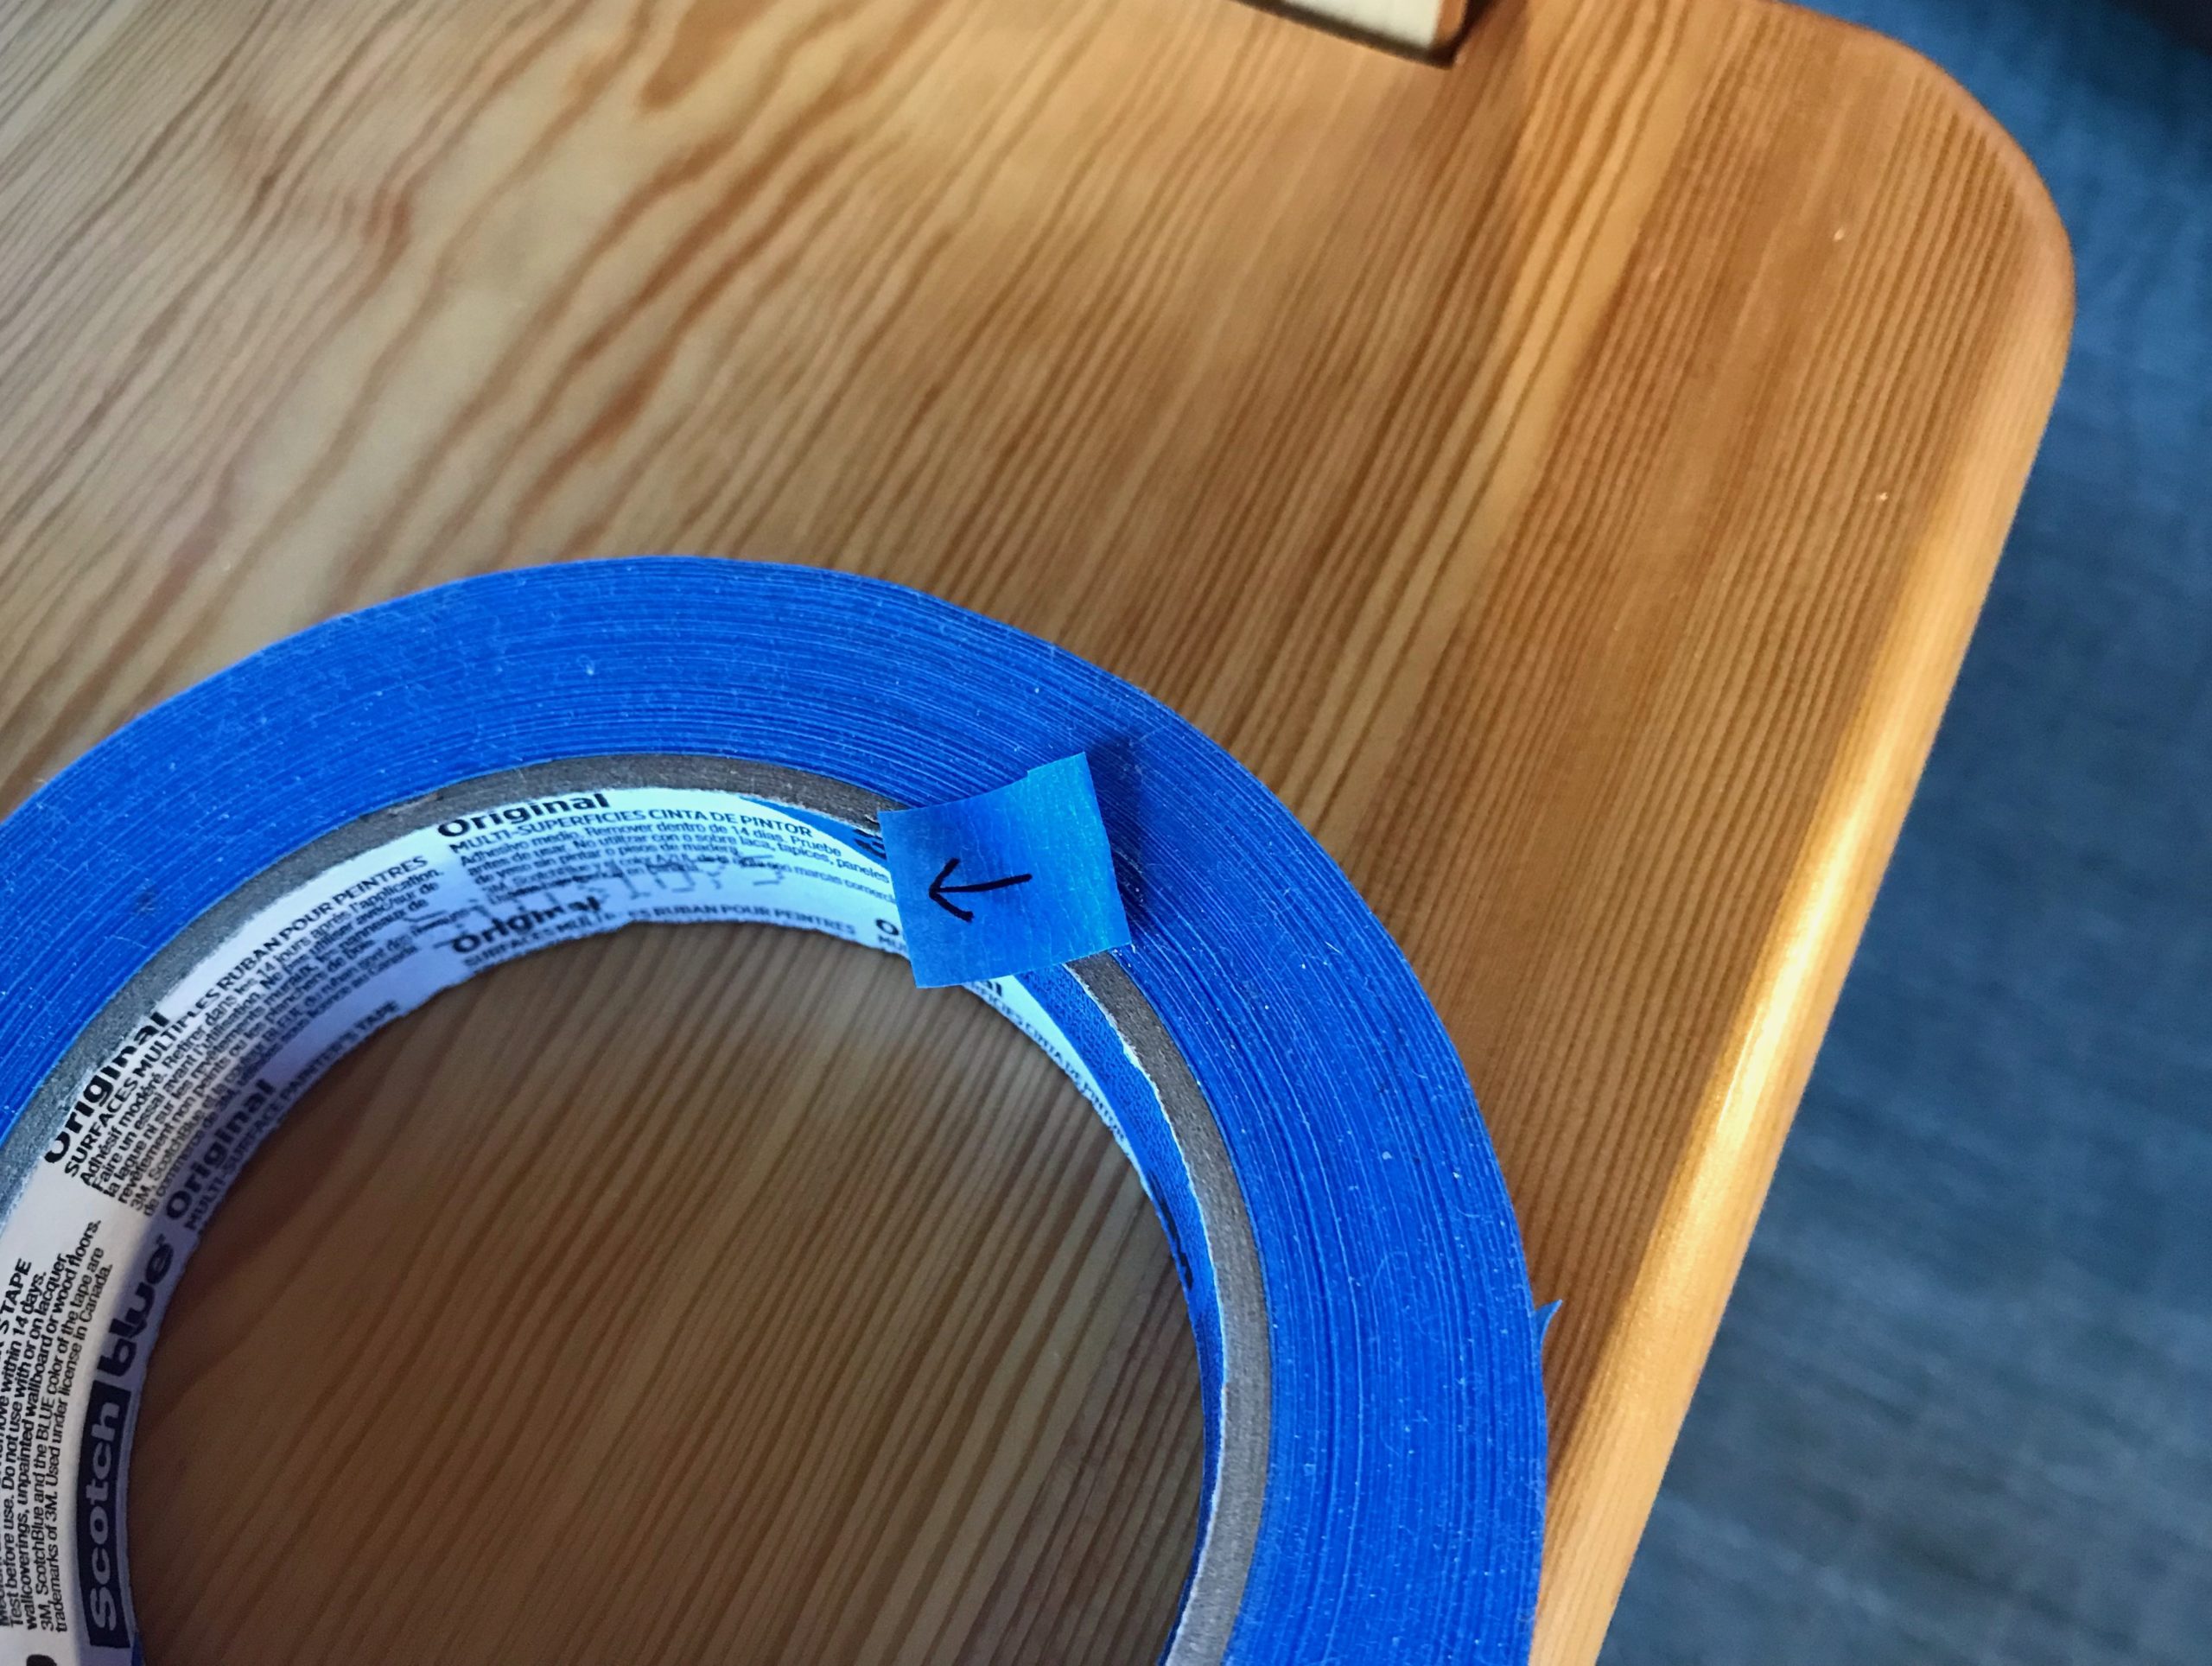 Weaver's uses for blue painter's tape.